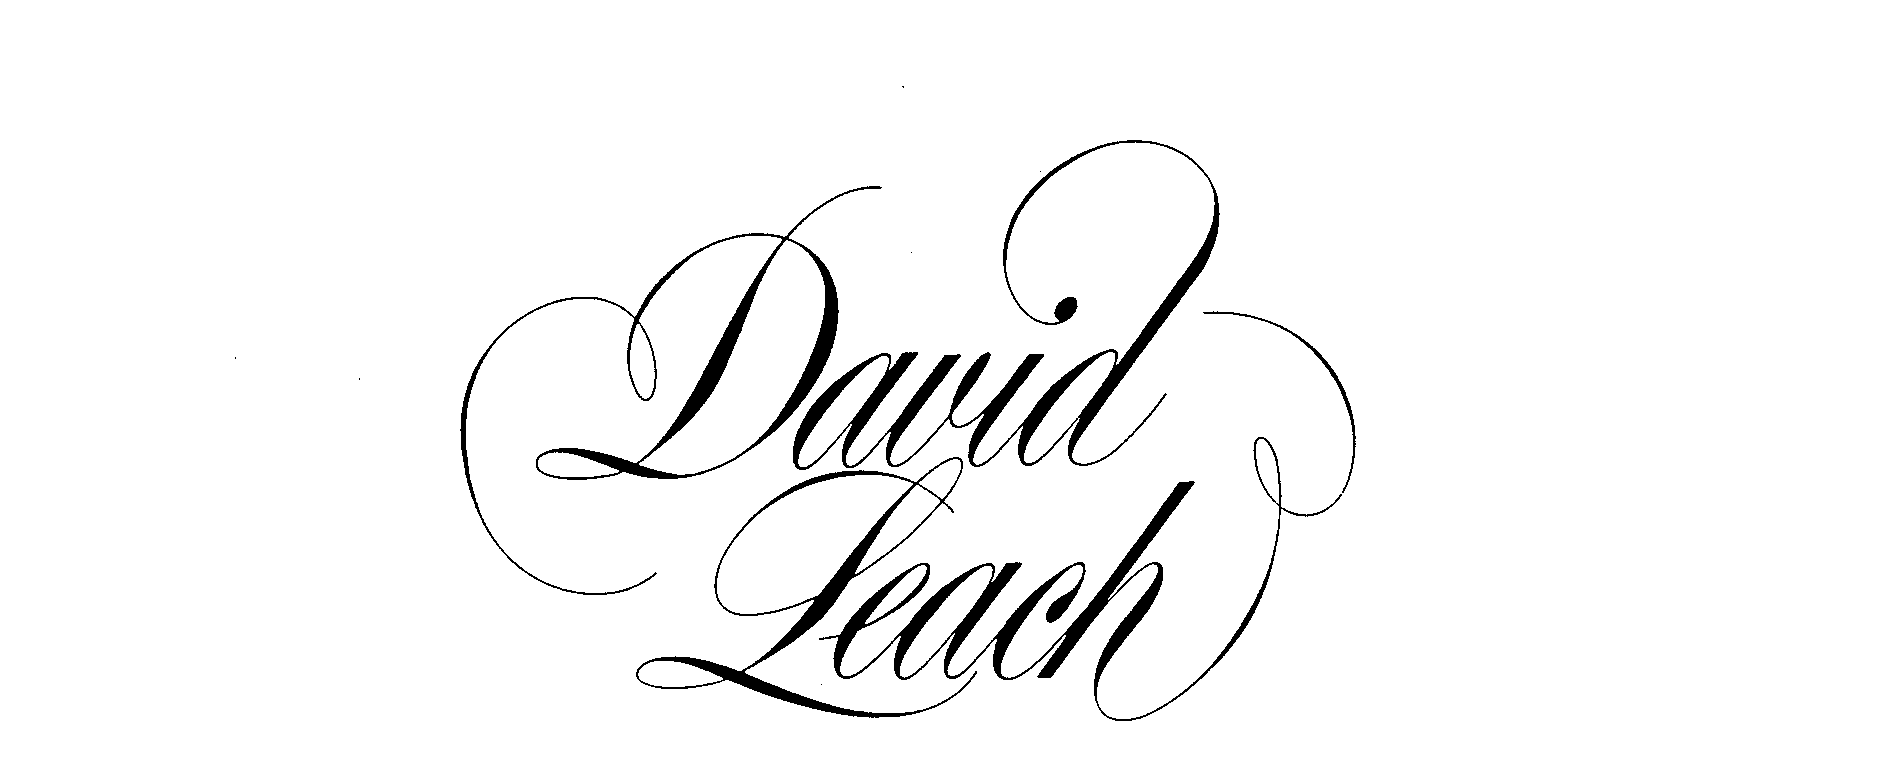  DAVID LEACH